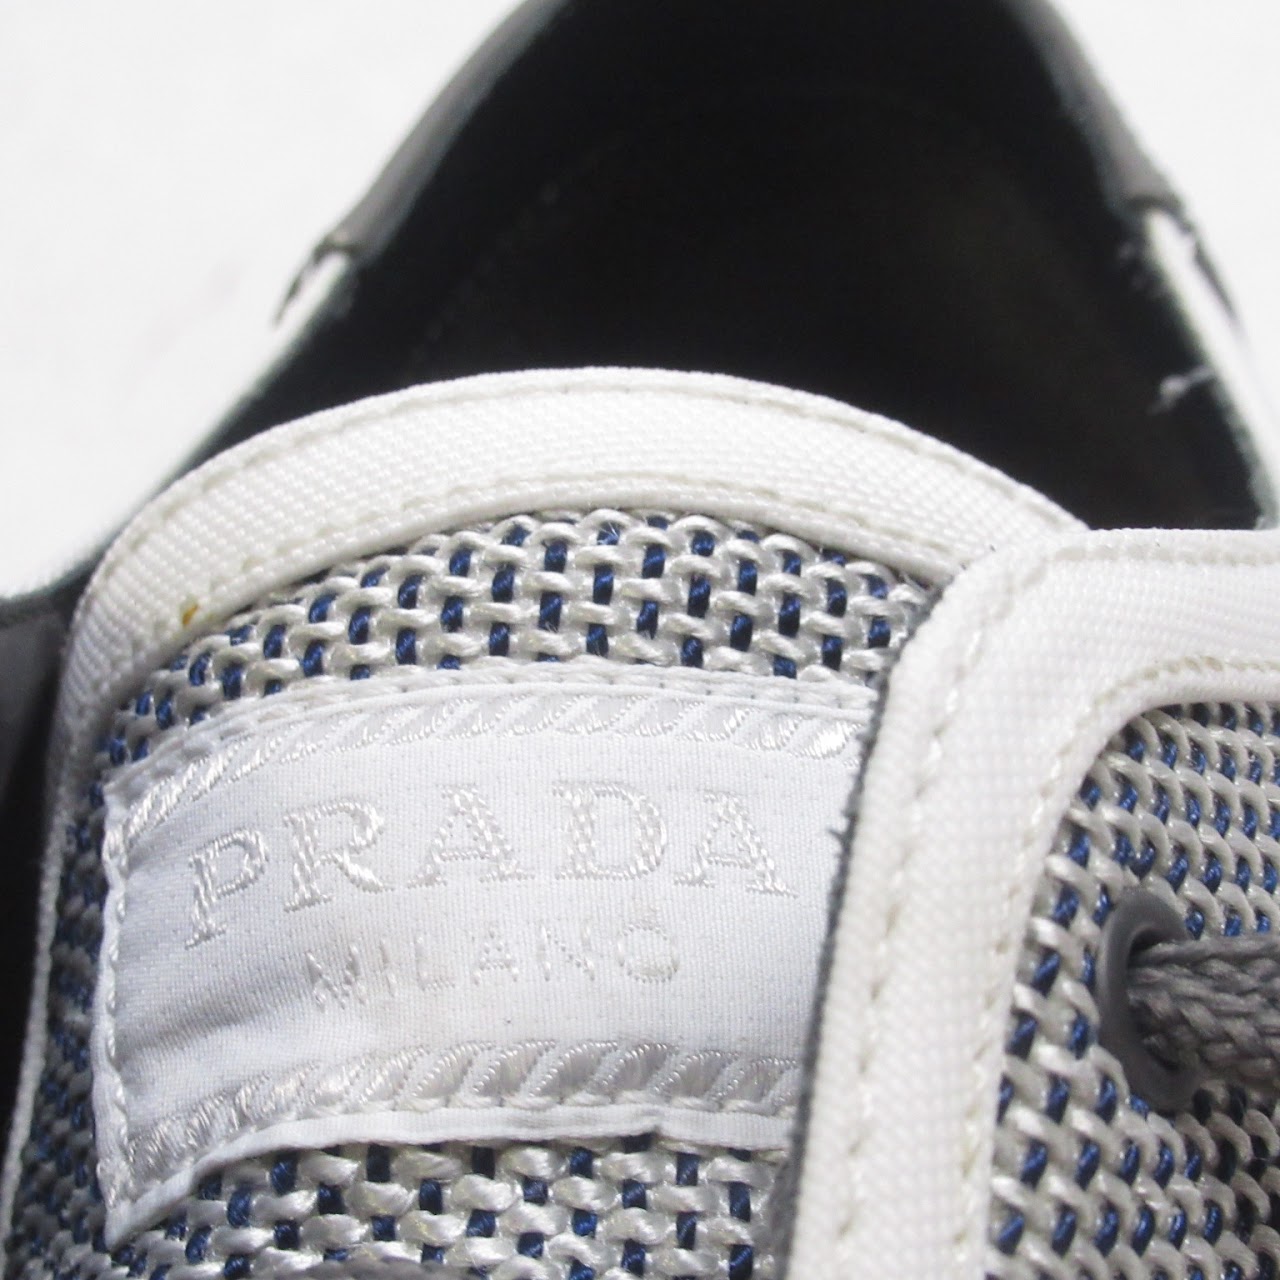 Prada Grey Woven Sneakers